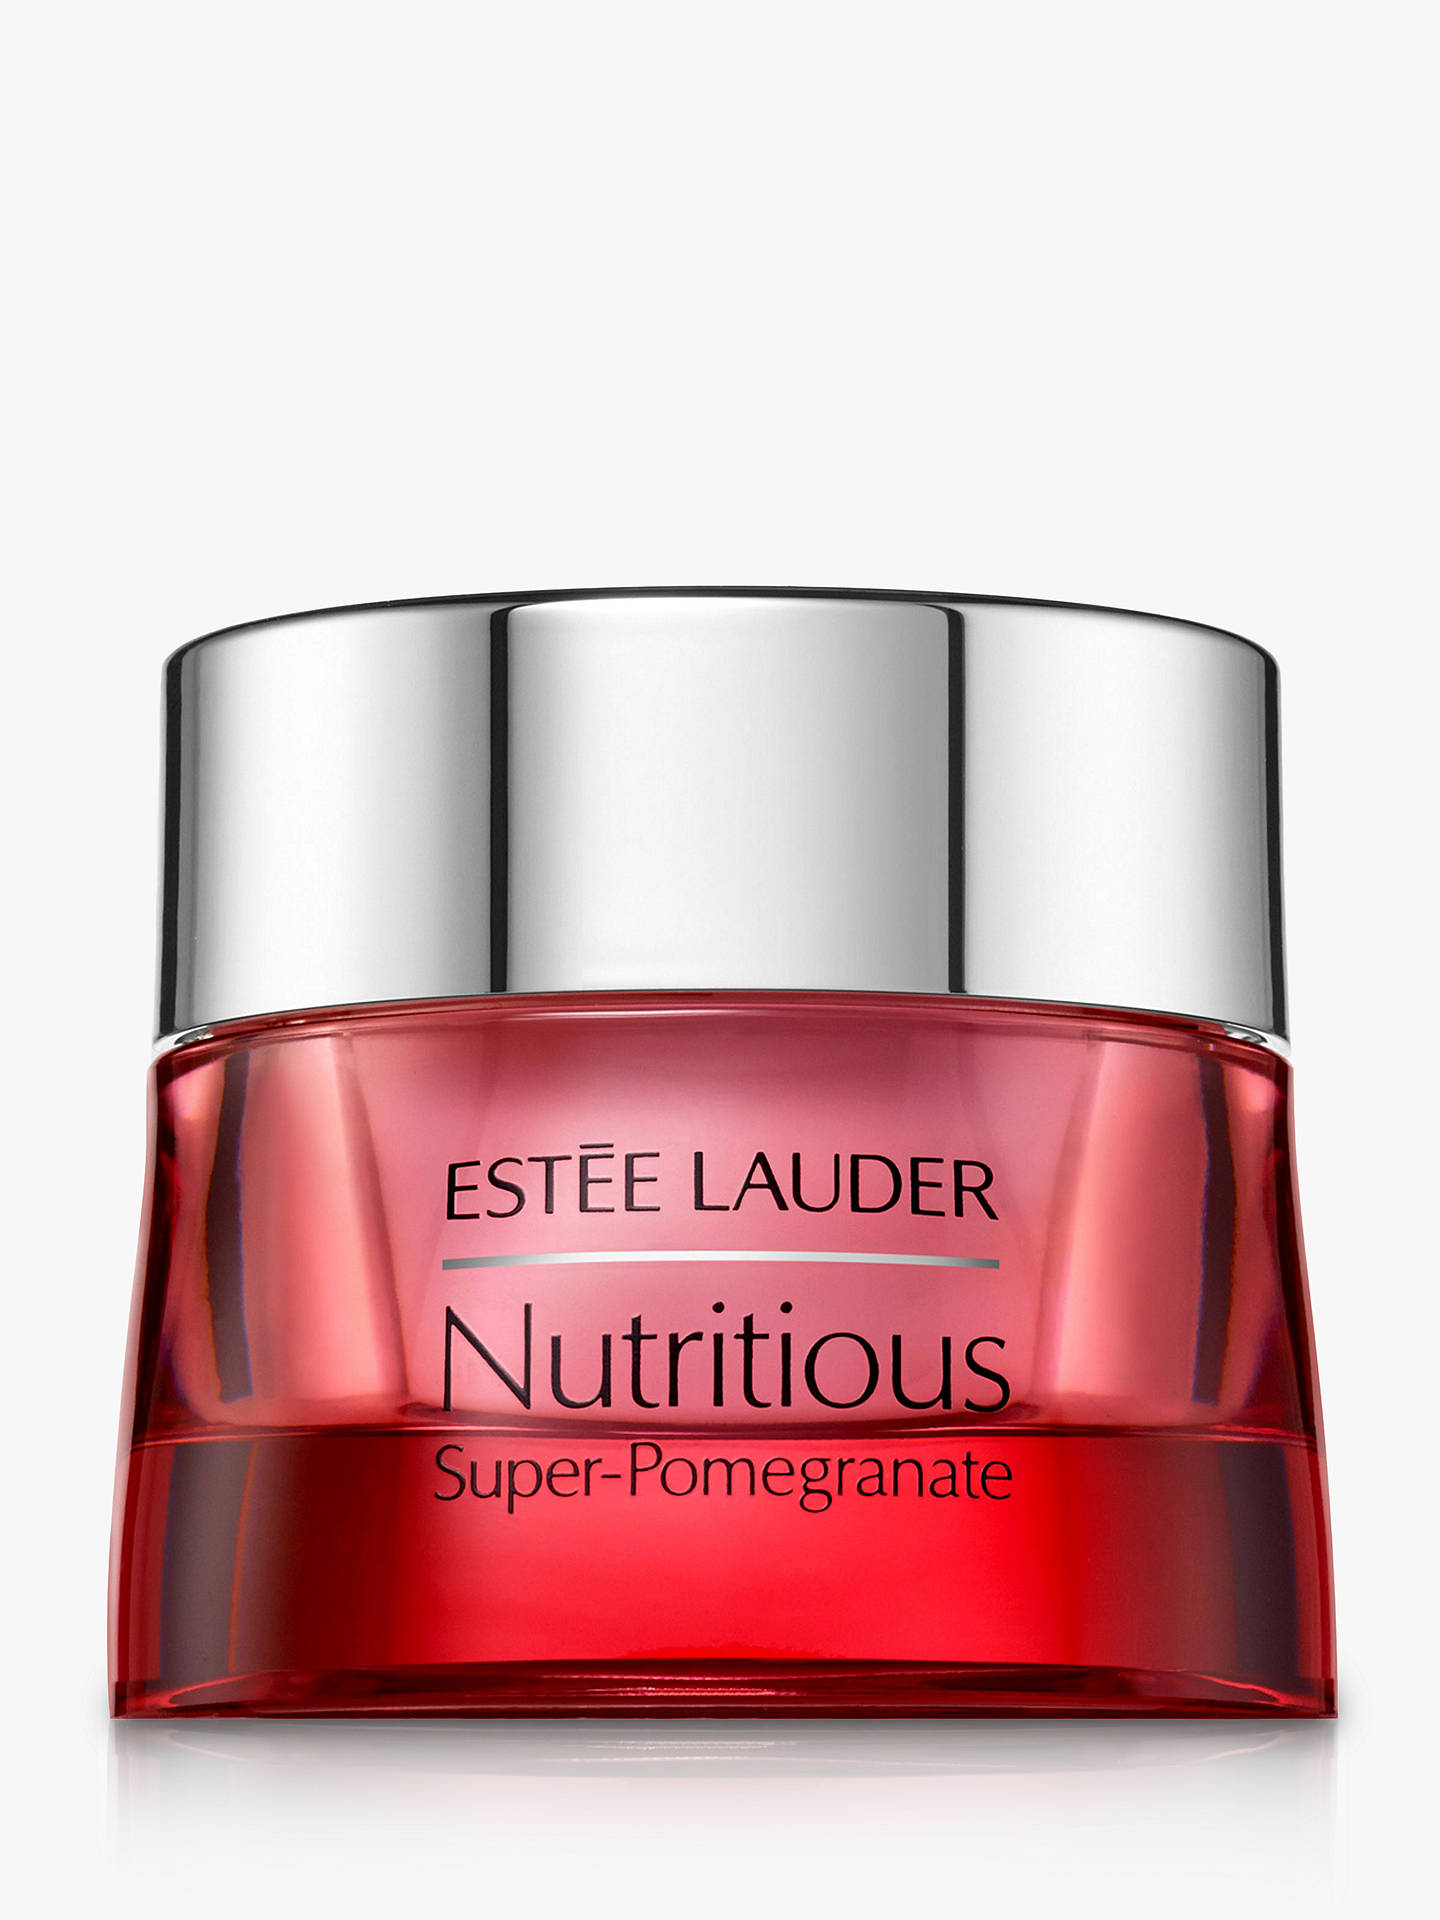 à¸à¸¥à¸à¸²à¸£à¸à¹à¸à¸«à¸²à¸£à¸¹à¸à¸�à¸²à¸à¸ªà¸³à¸«à¸£à¸±à¸ ESTEE LAUDER Nutritious Super-Pomegranate Radiant Energy Eye Jelly 15 ml.